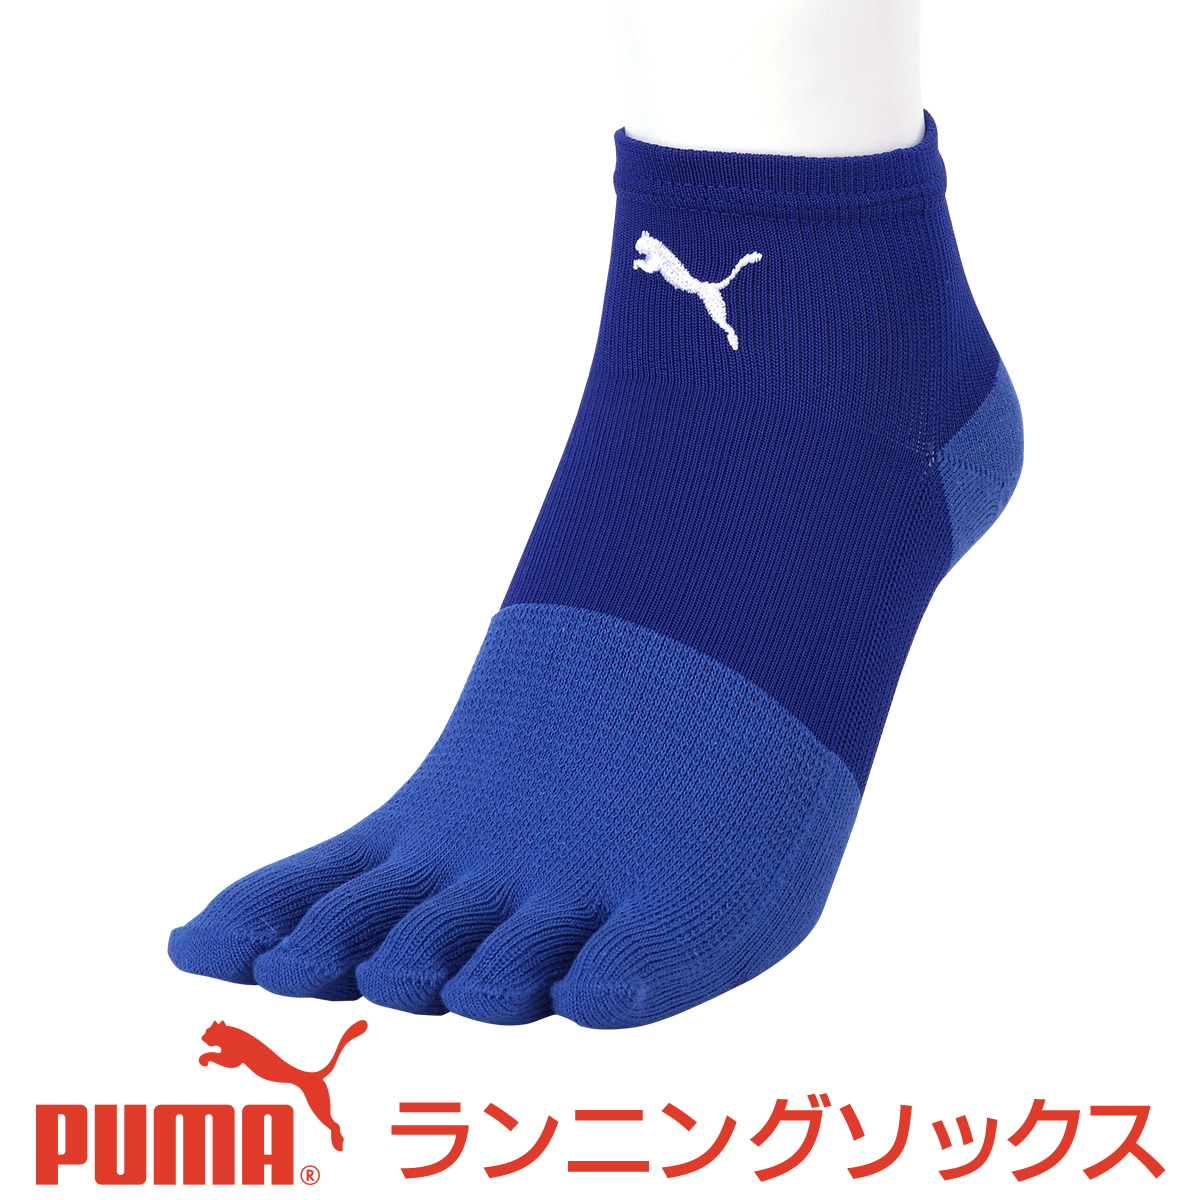 セール！30％OFF PUMA （ プーマ ） メンズ 靴下 足底滑り止め付き アーチサポート  日本製 5本指 マラソン ランニング ソックス  大きいサイズ 28cm 29cm もあり2822-204男性 メンズ プレゼント 贈答 ギフト